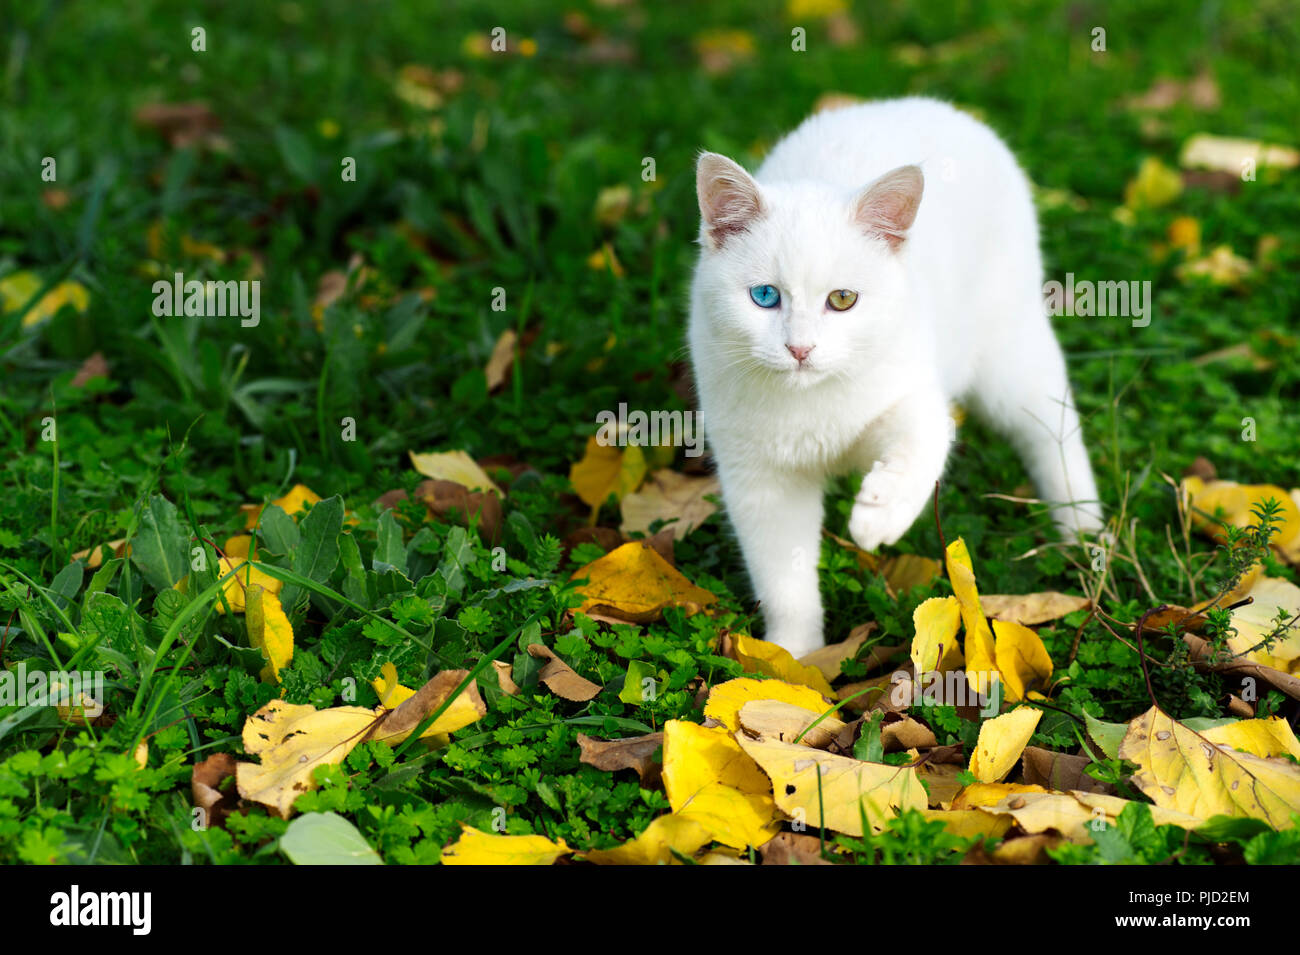 Odd eyed gatito caminando sobre el césped con el follaje de otoño Foto de stock